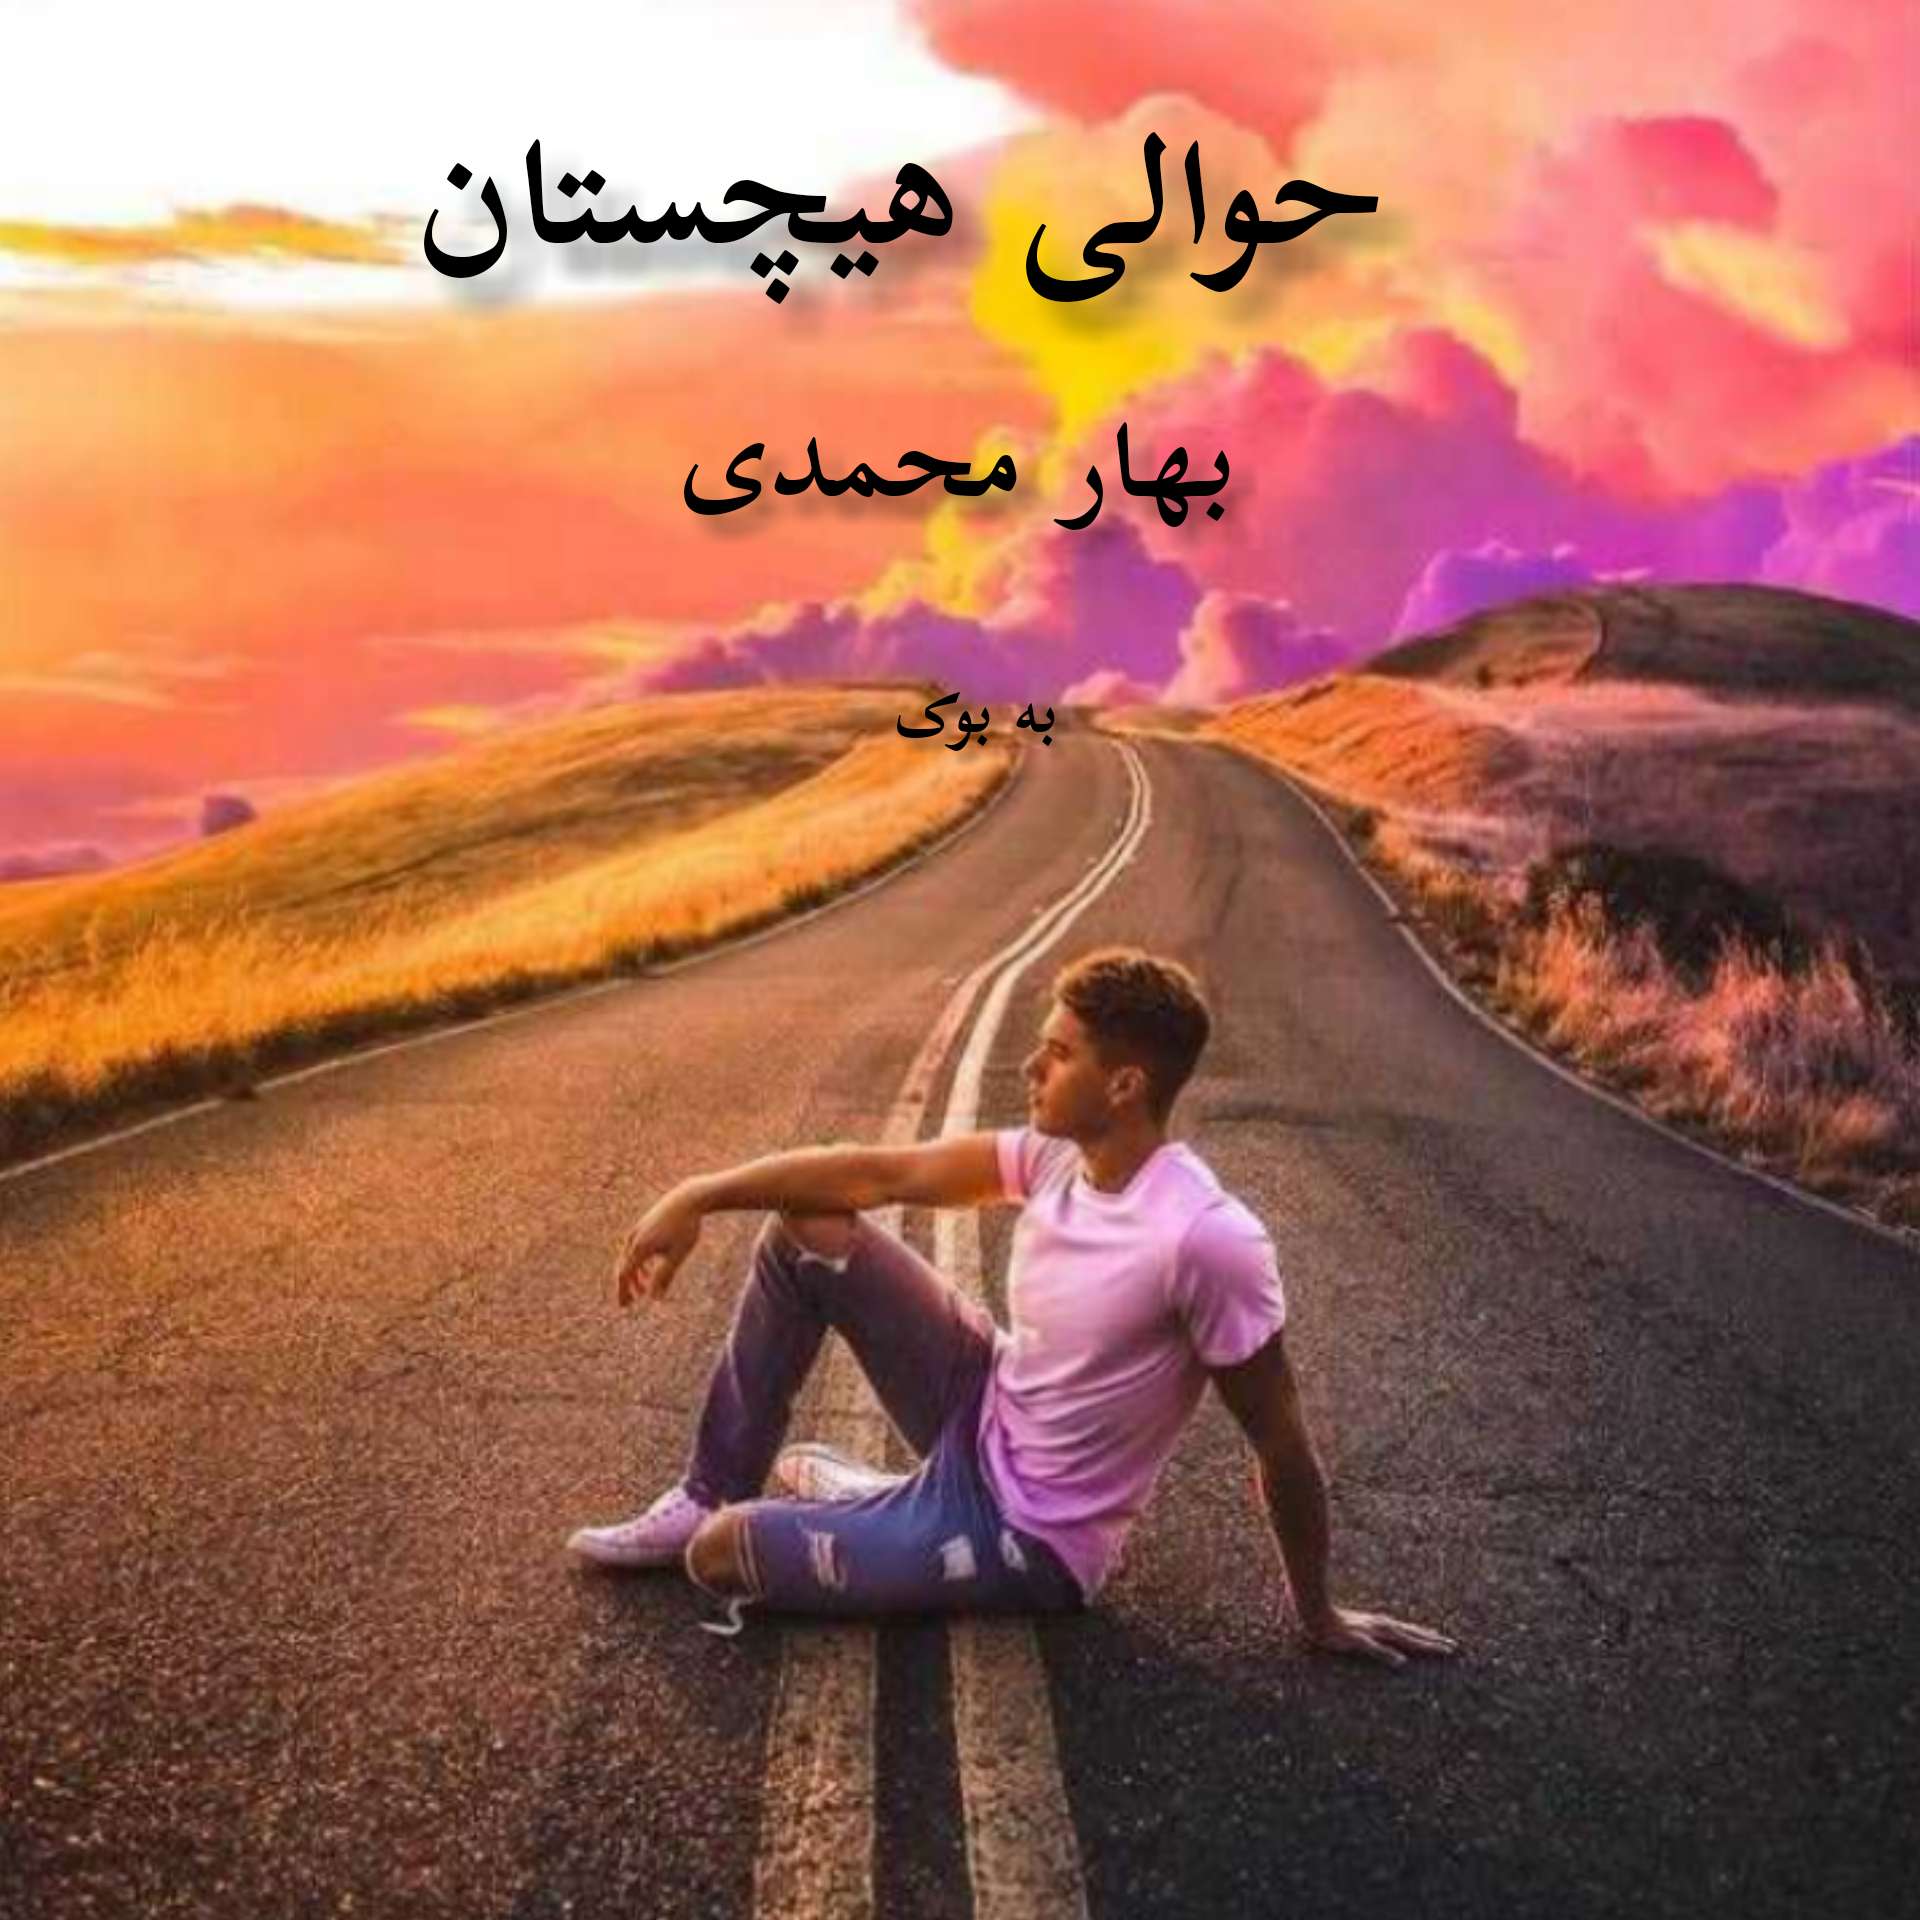 رمان حوالی هیچستان از بهار محمدی 1